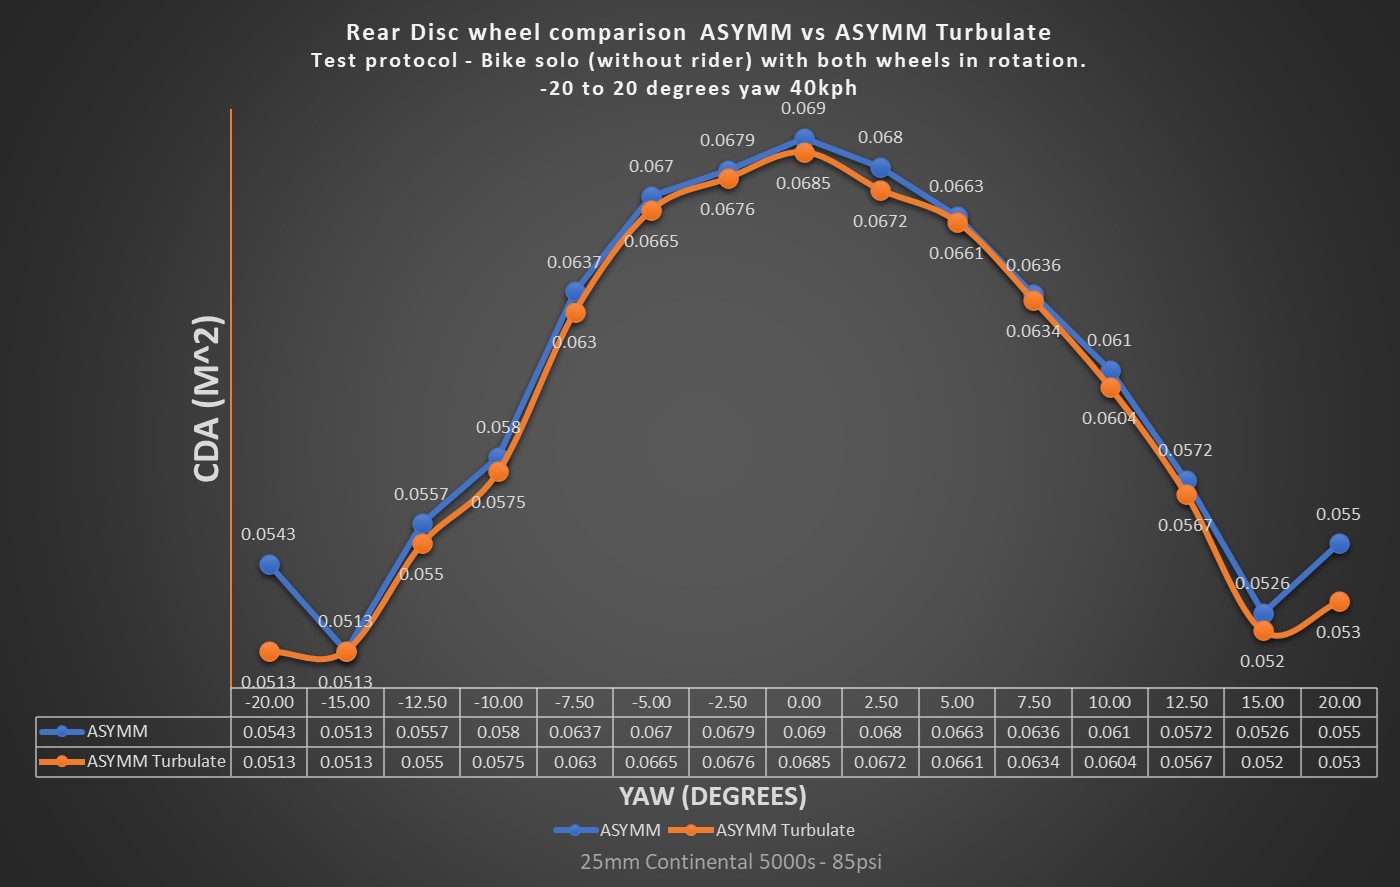 Asymm vs Asymm Turbulate Wind Tunnel cDA data